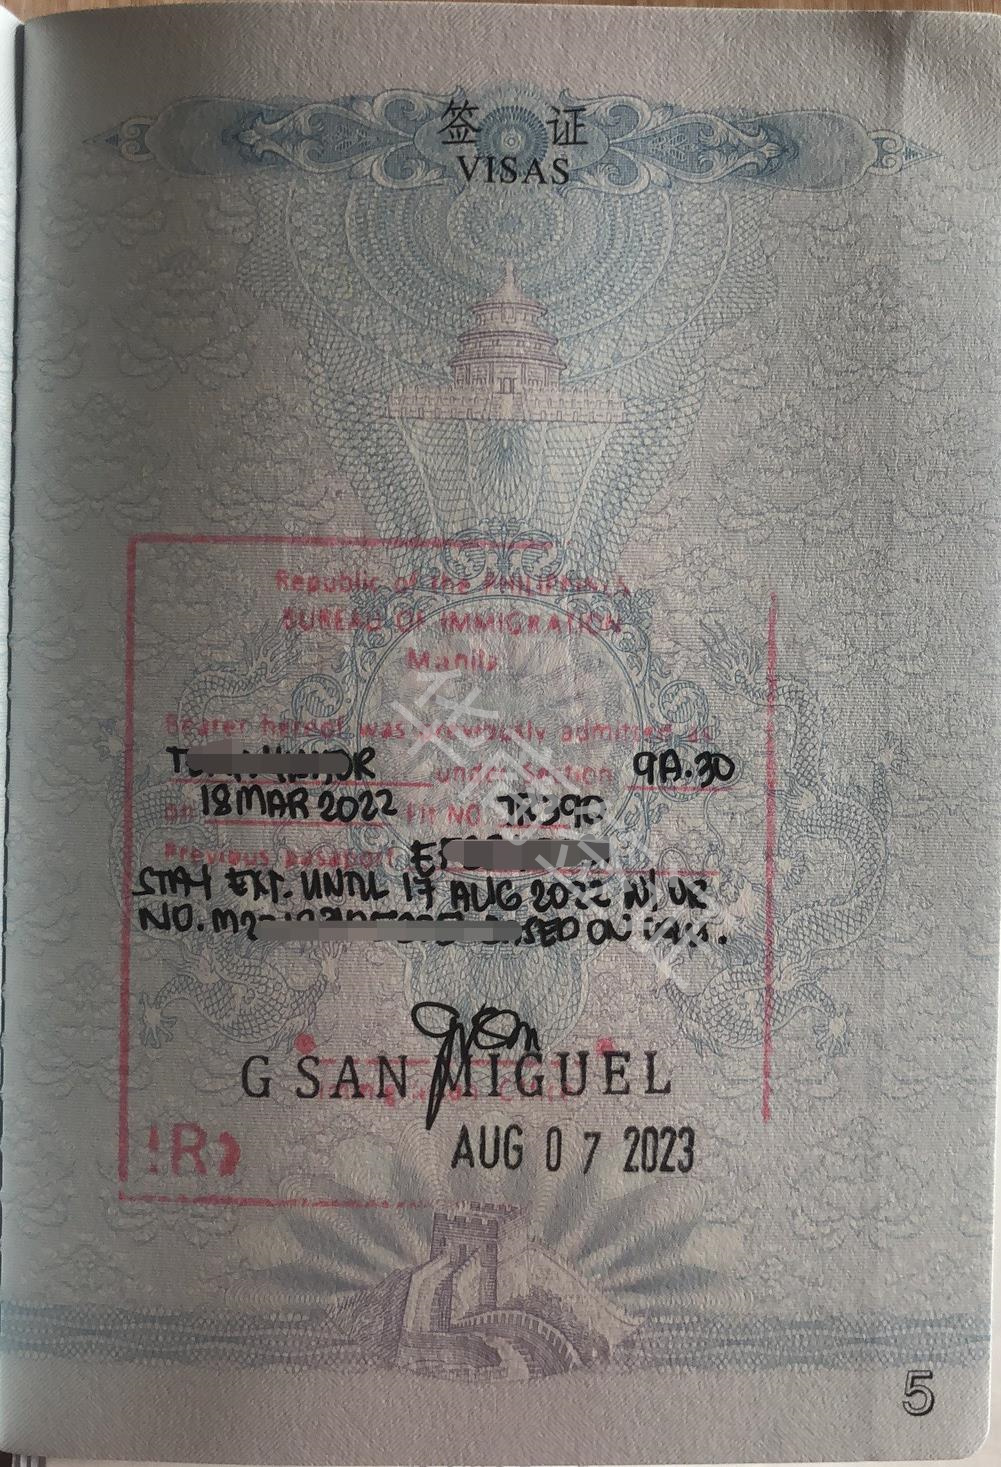 菲律宾出入境盖章申请流程是什么